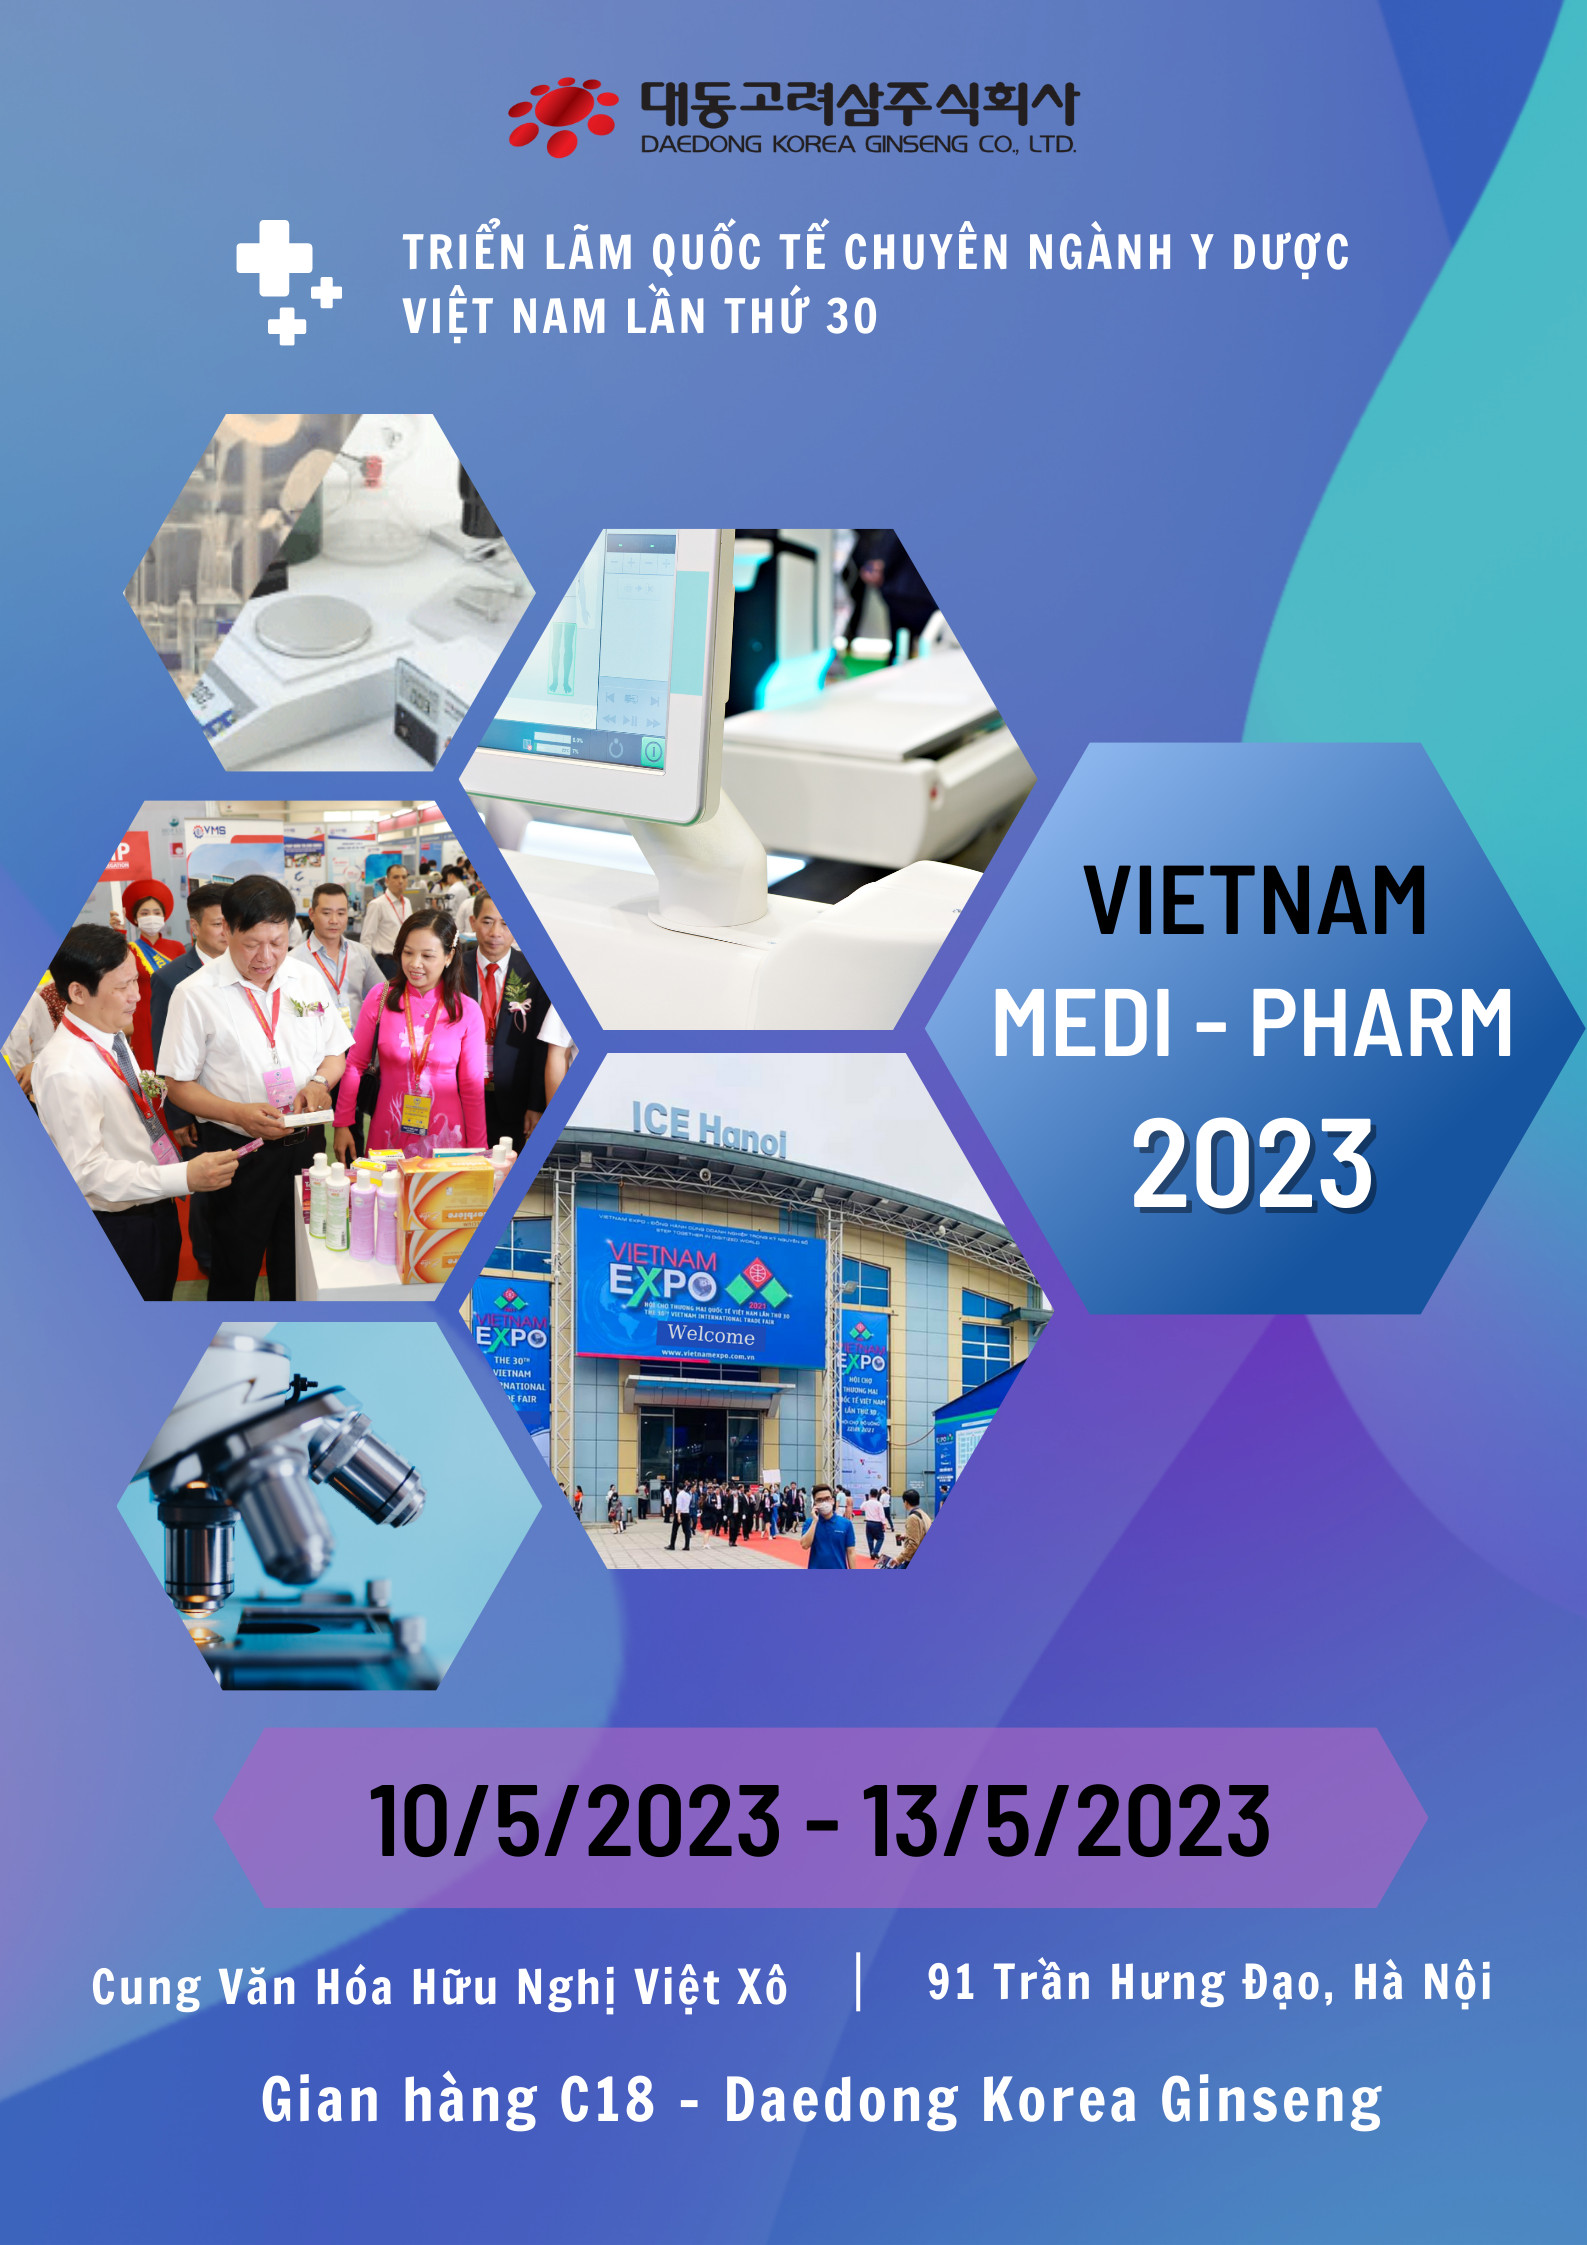 Triển lãm quốc tế chuyên ngành y dược Việt Nam lần thứ 30 